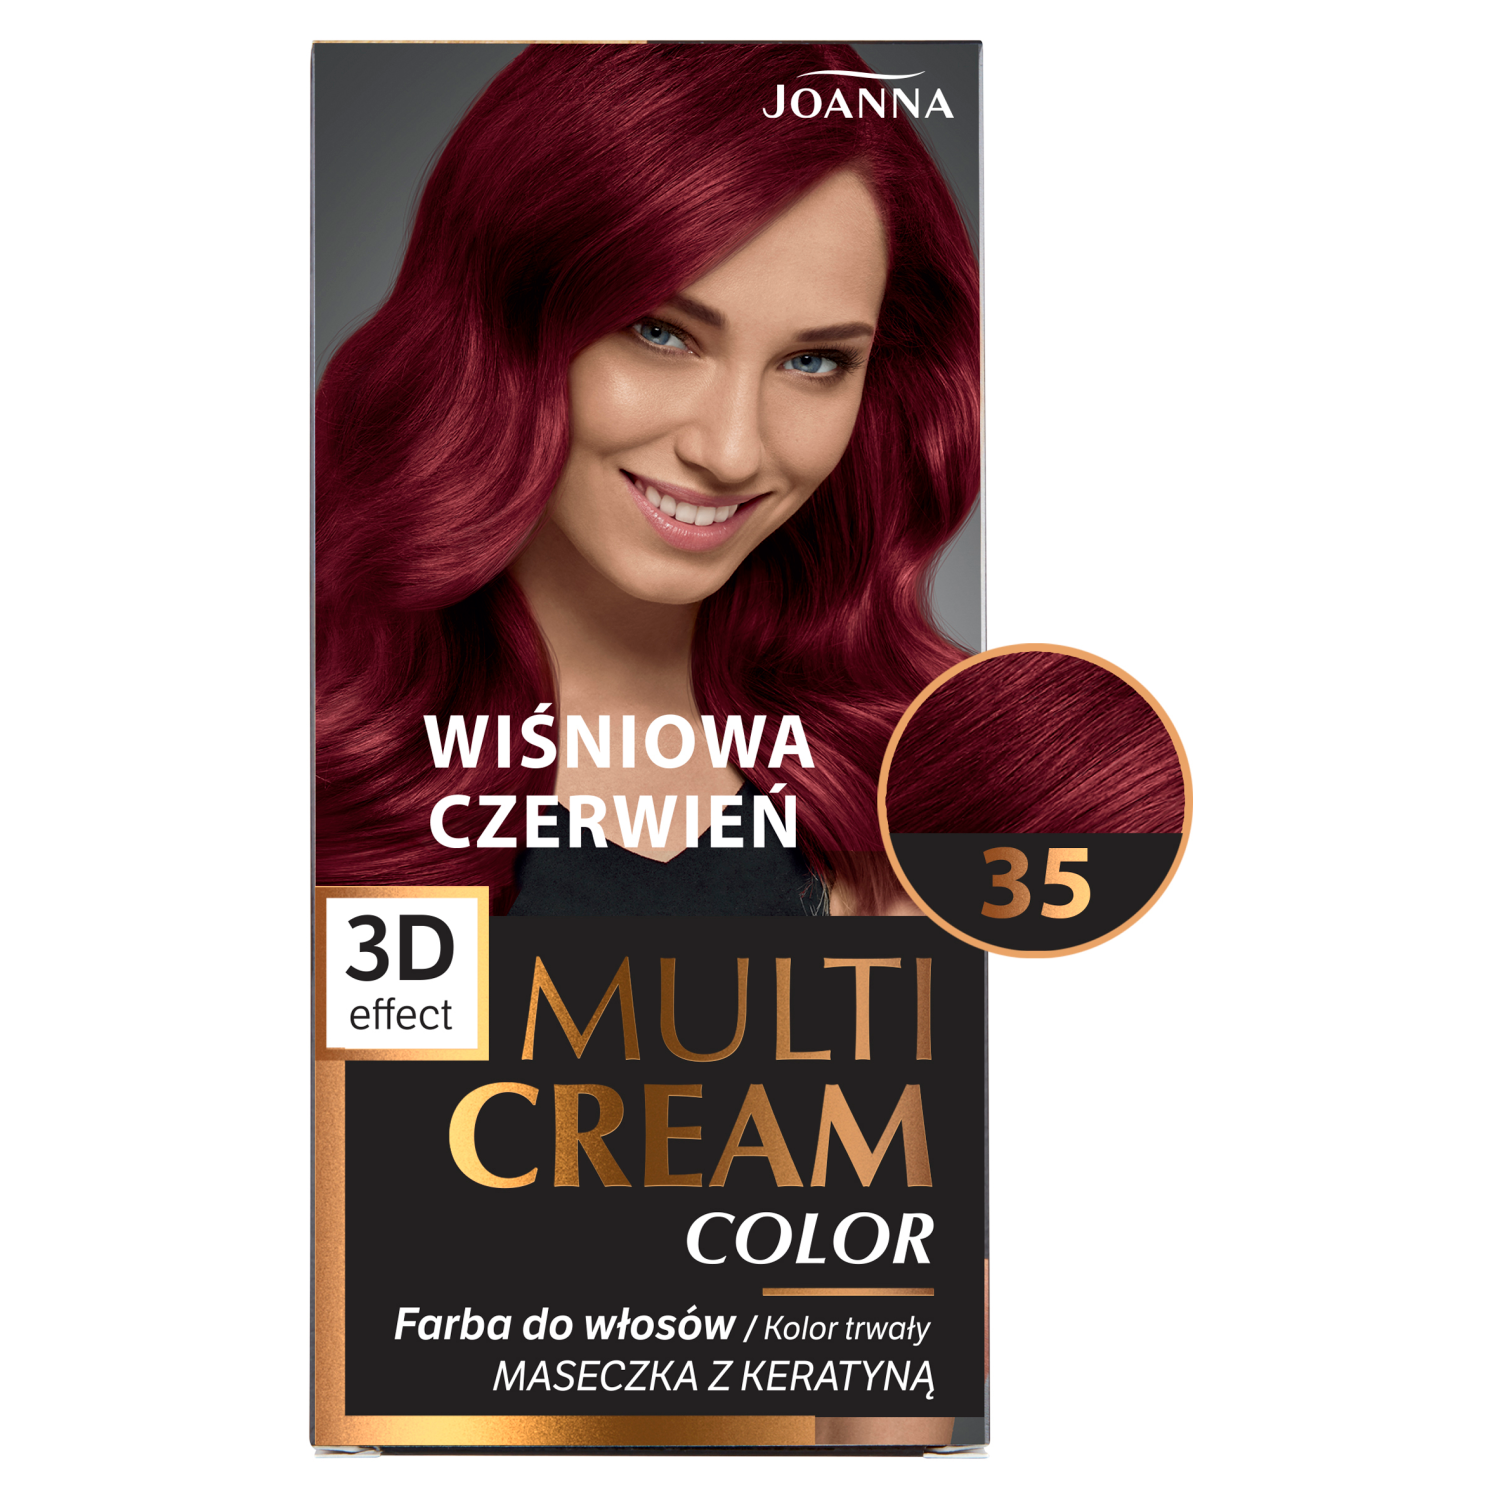 Joanna Multi Cream Color farba do włosów 35 wiśniowa czerwień, 1 opak. |  hebe.pl